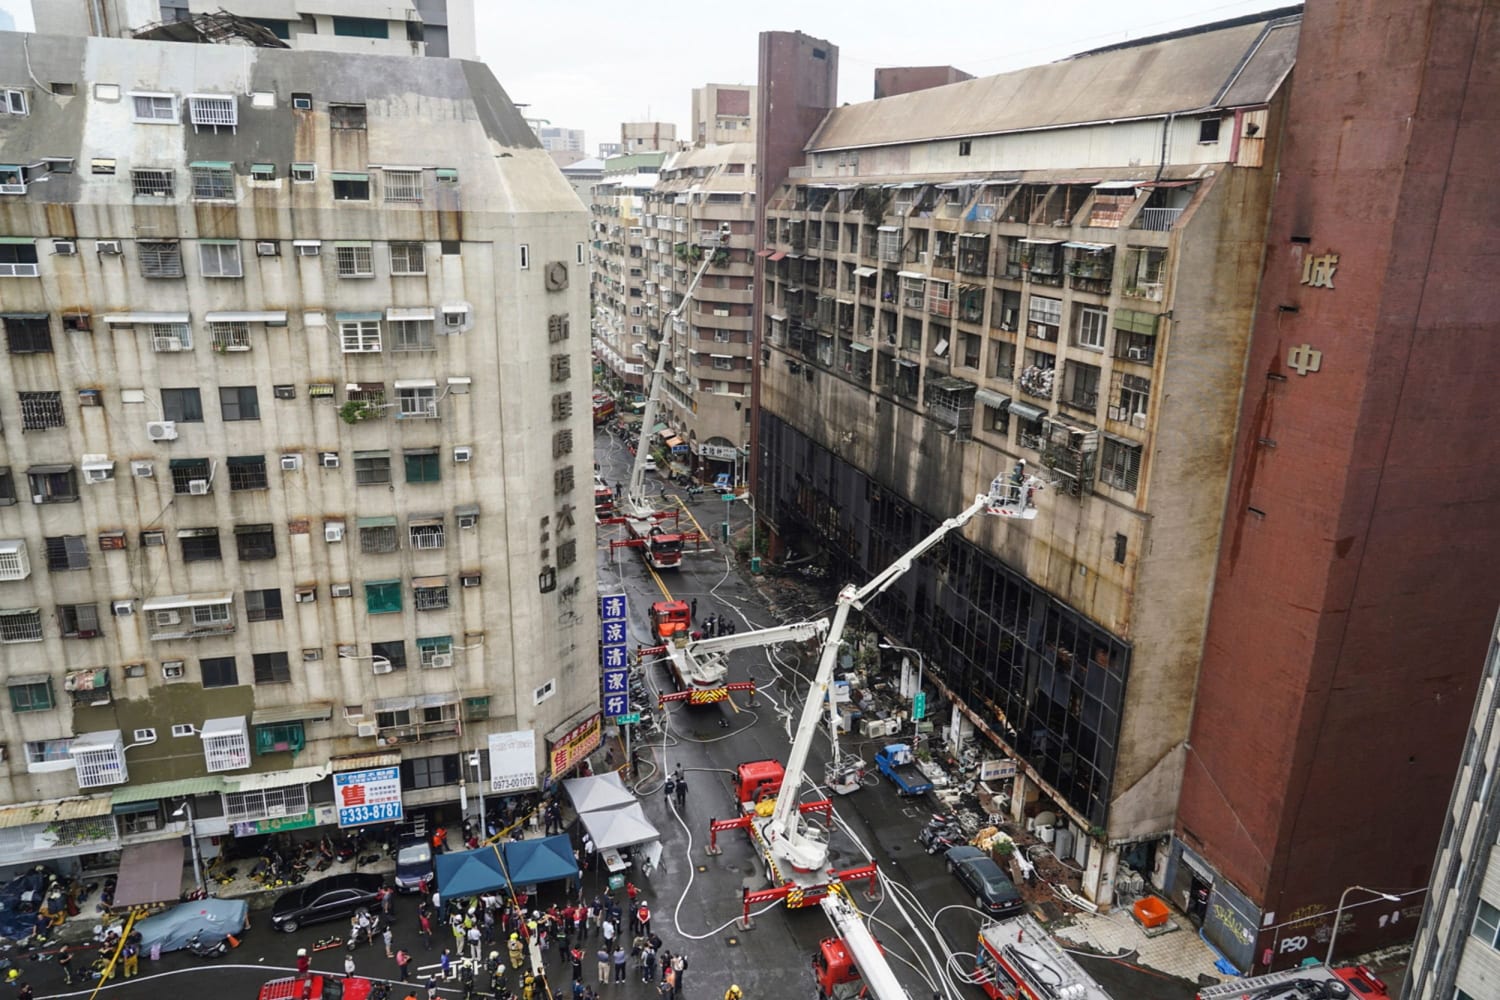 Twenty-seven feared dead after mine blaze in Peru - Taipei Times